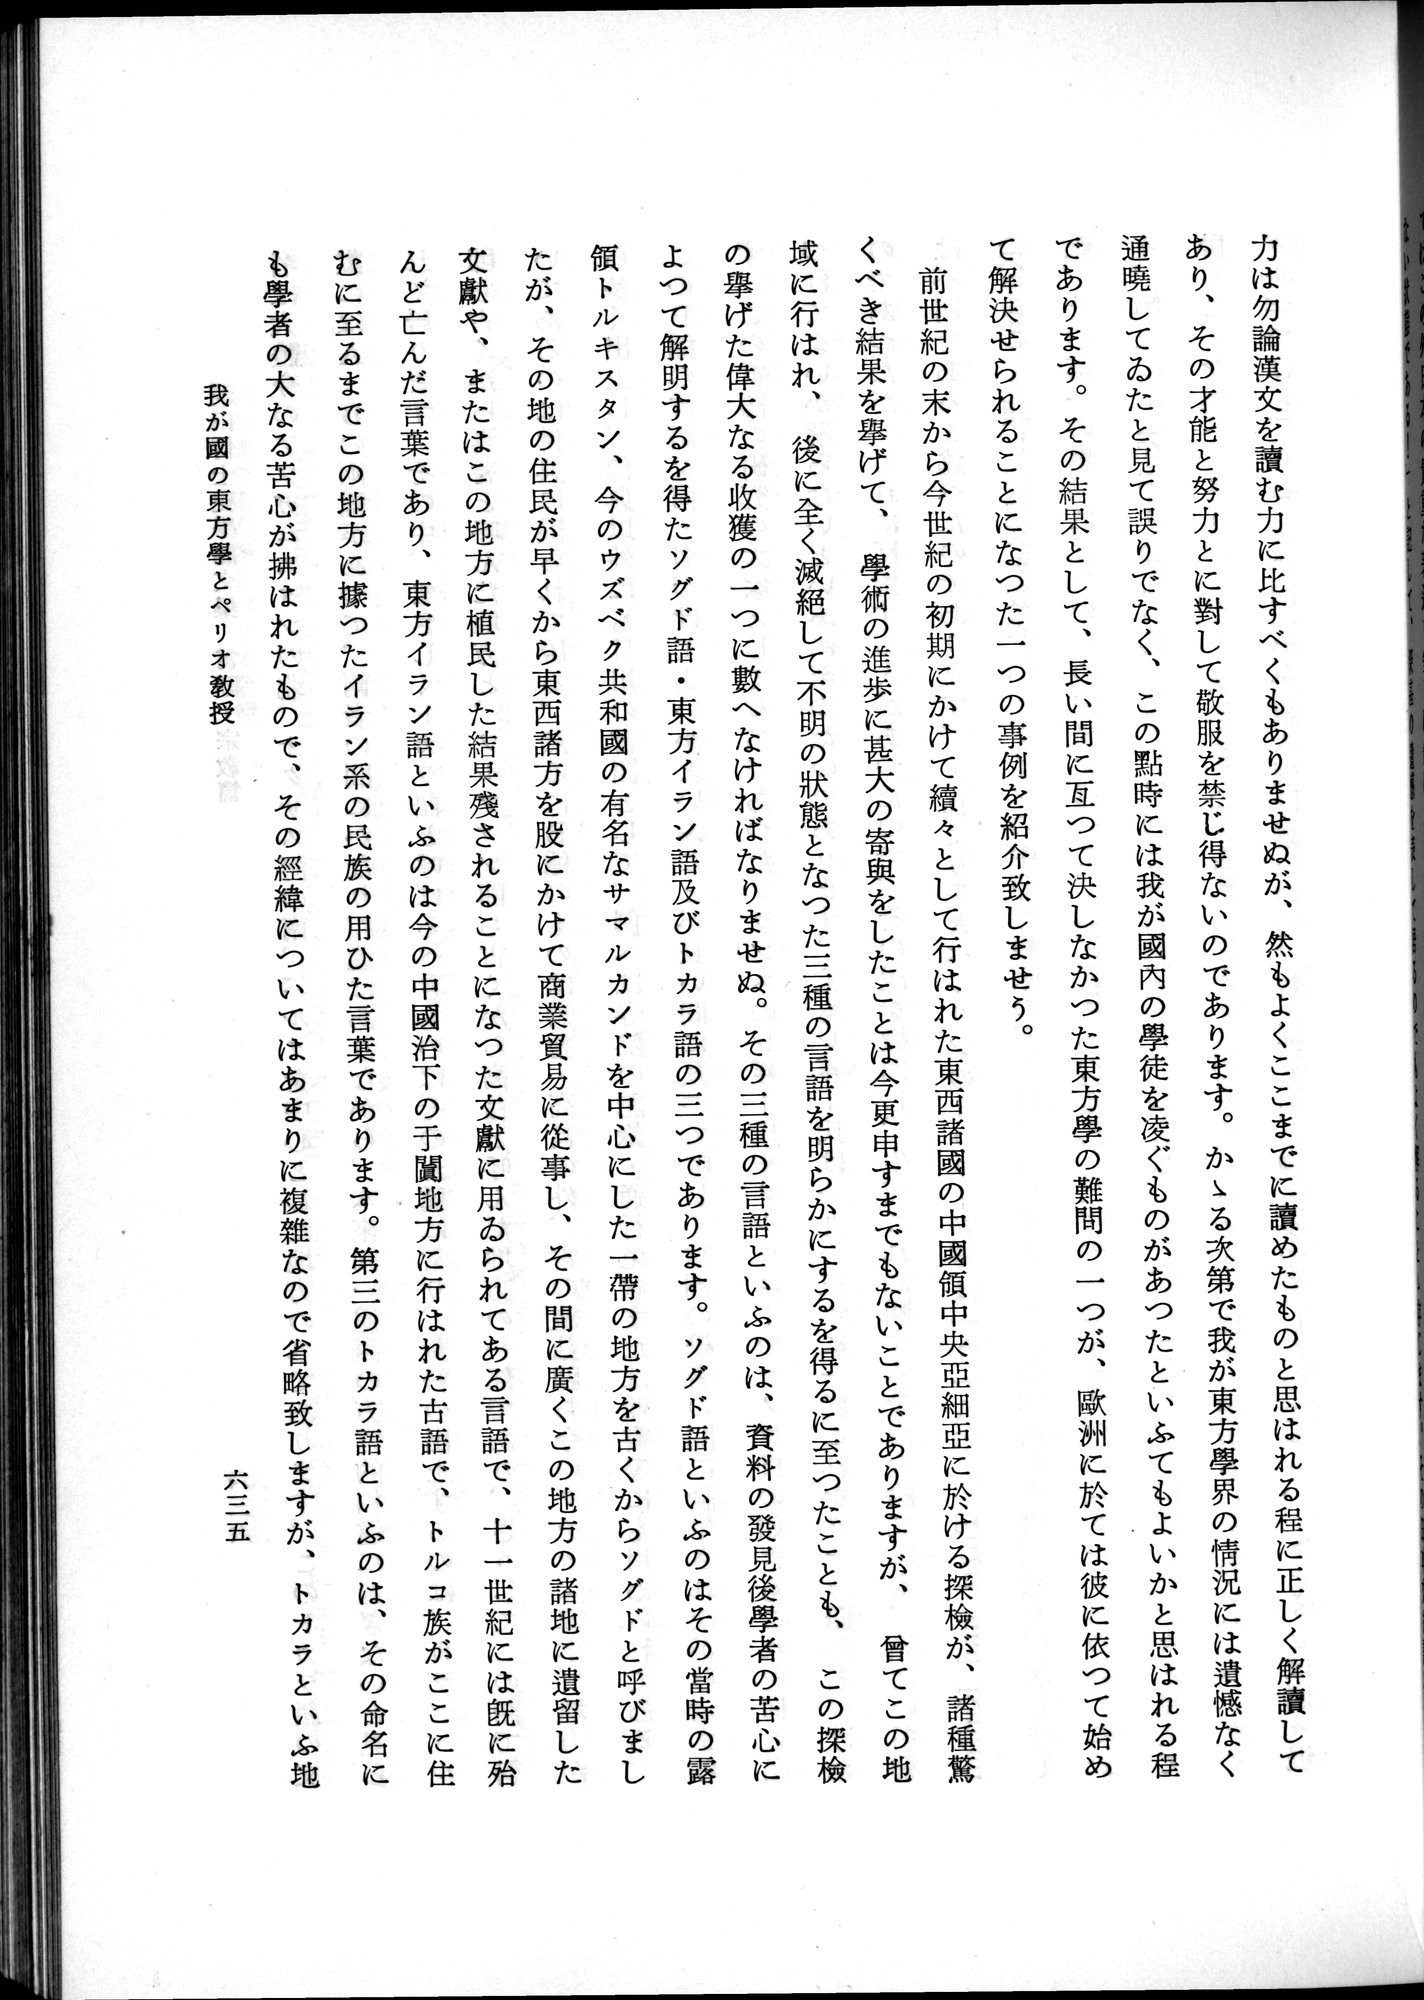 羽田博士史学論文集 : vol.2 / Page 699 (Grayscale High Resolution Image)